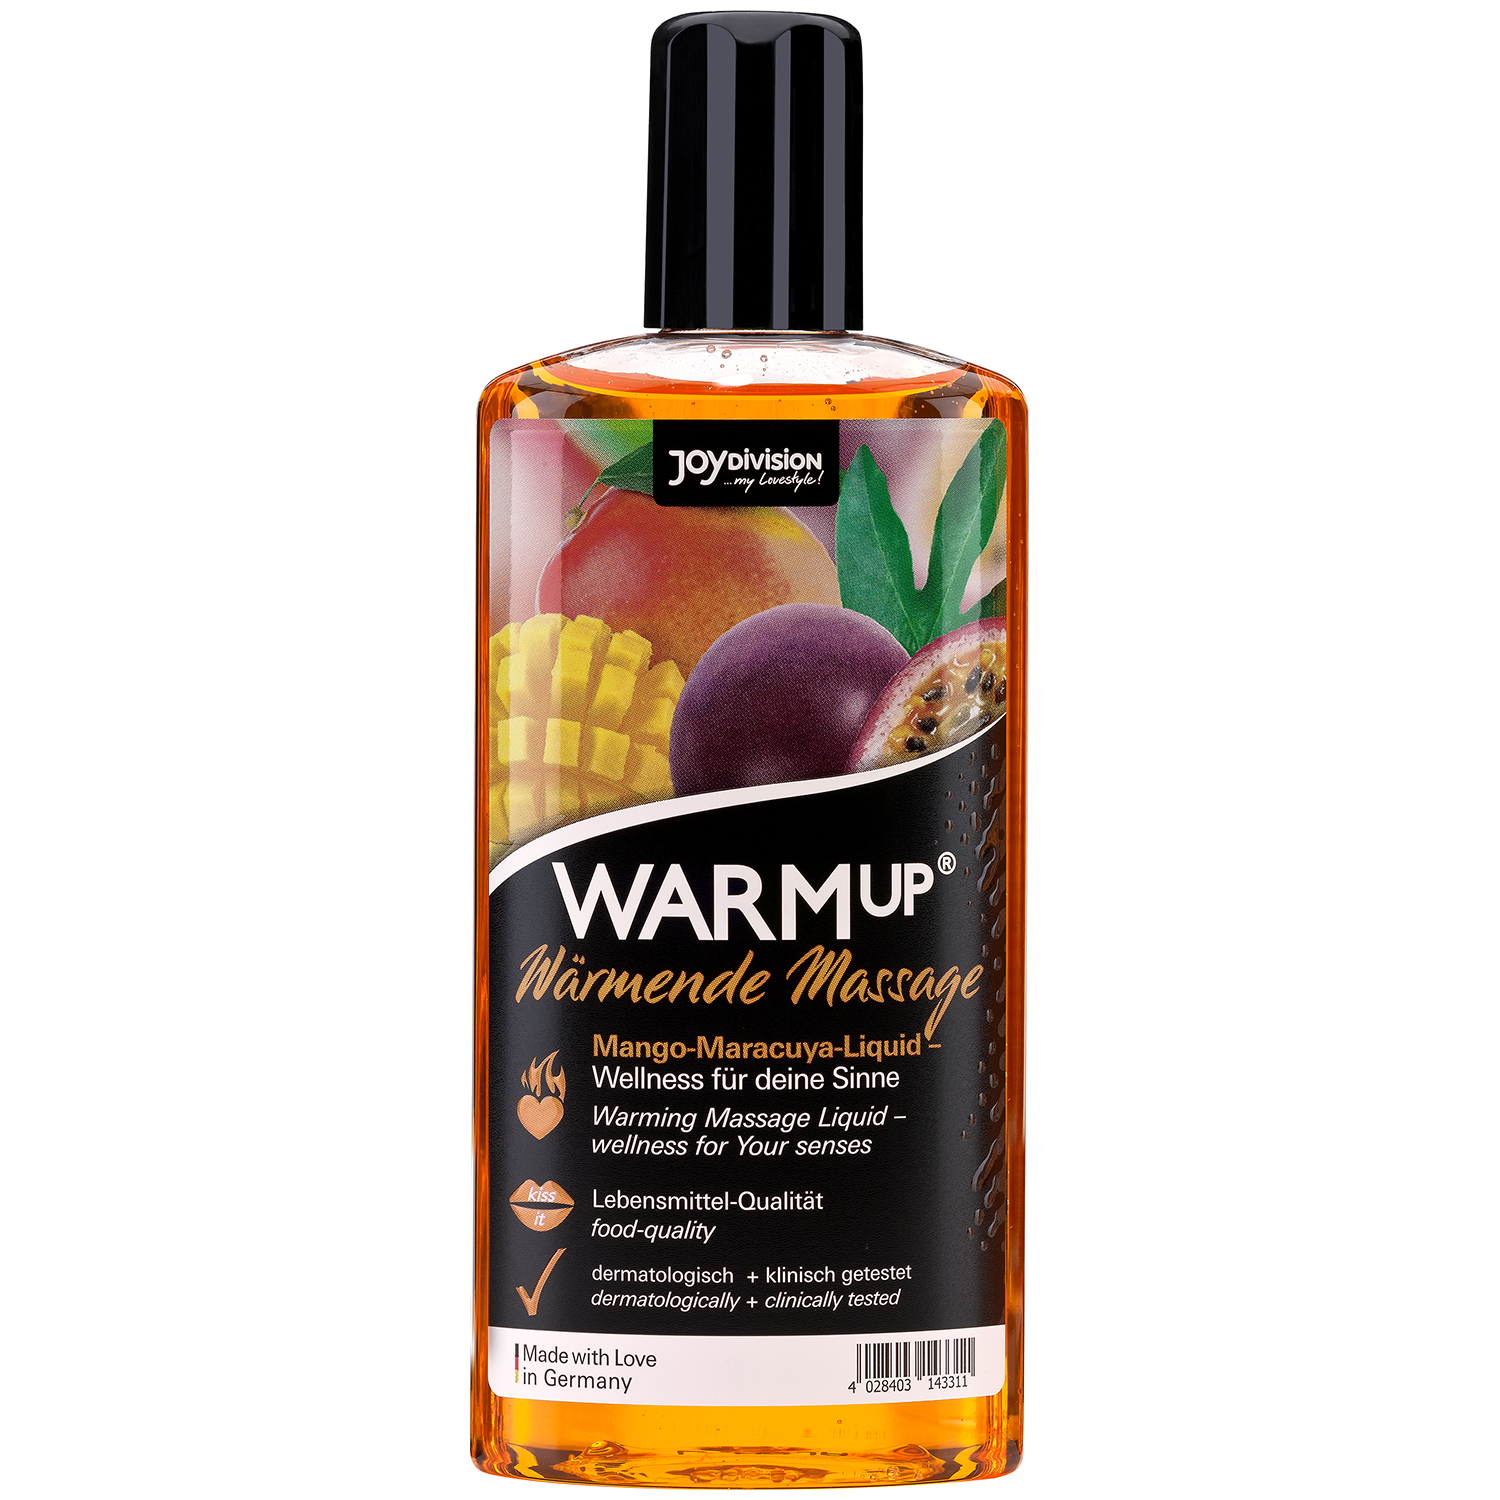 15: JoyDivision WARMup Varmende Massageolie med Smag 150 ml   - Orange